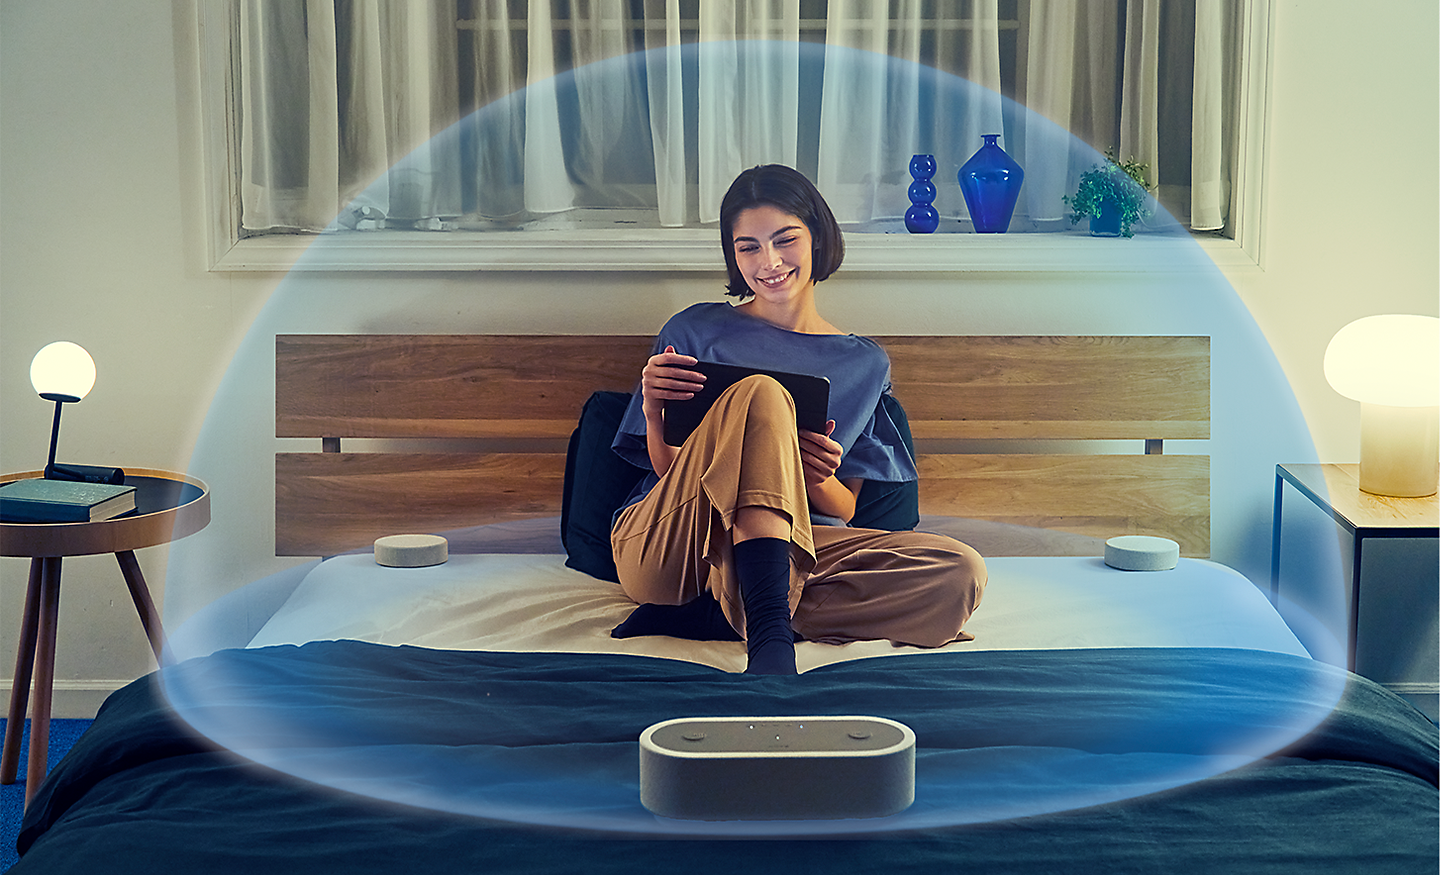 Obrázok osoby sediacej na posteli, ktorá je obklopená reproduktormi HT-AX7 a transparentná bublina, ktorá ich obklopuje priestorovým zvukom